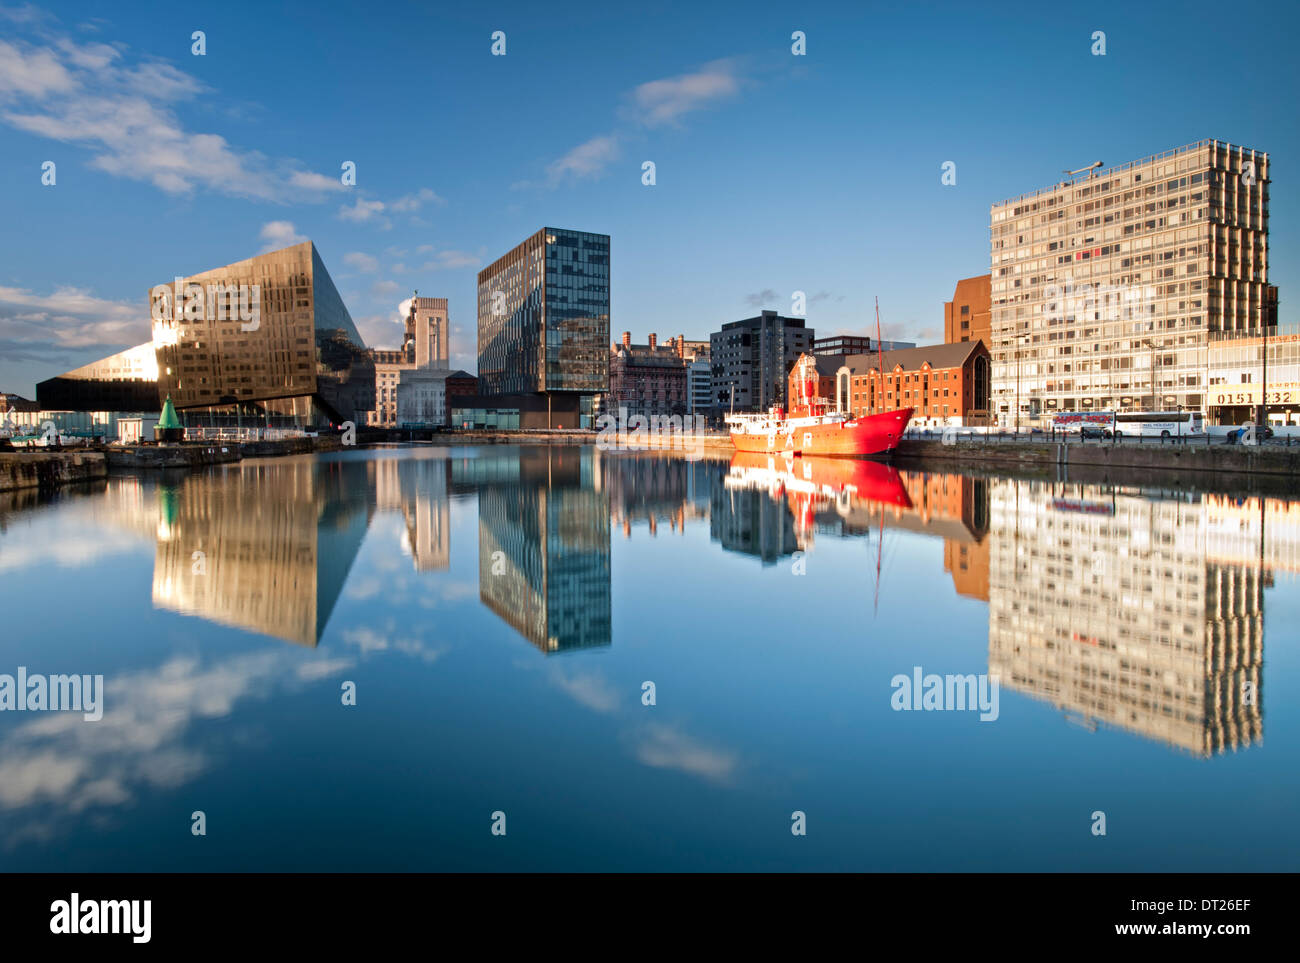 Appartamenti moderni, il Mersey Bar Lightship & Waterfront edifici, Canning Dock, Liverpool, Merseyside England, Regno Unito Foto Stock